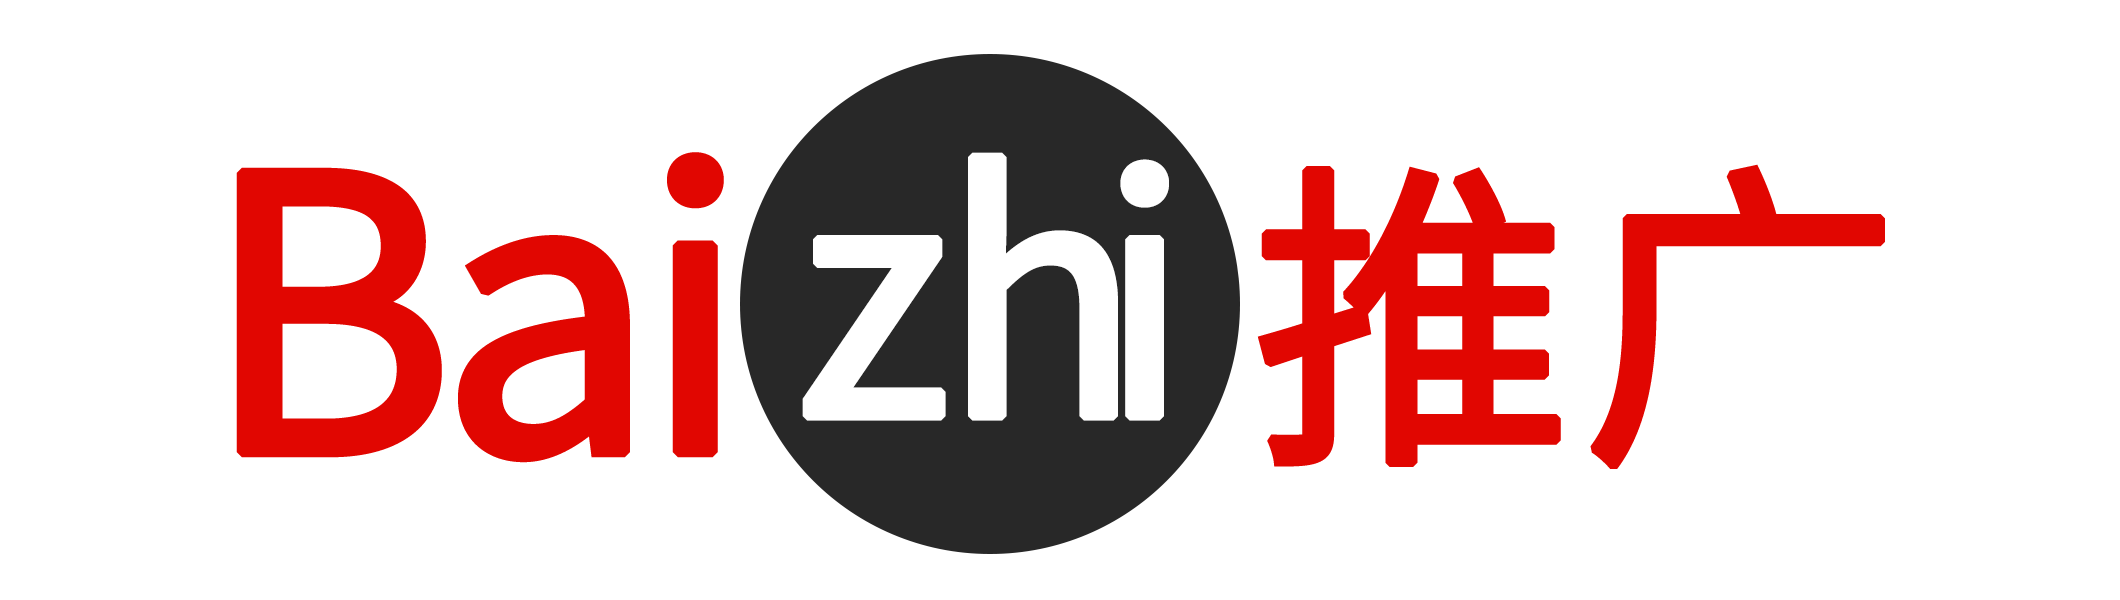 tuiguang_logo.png